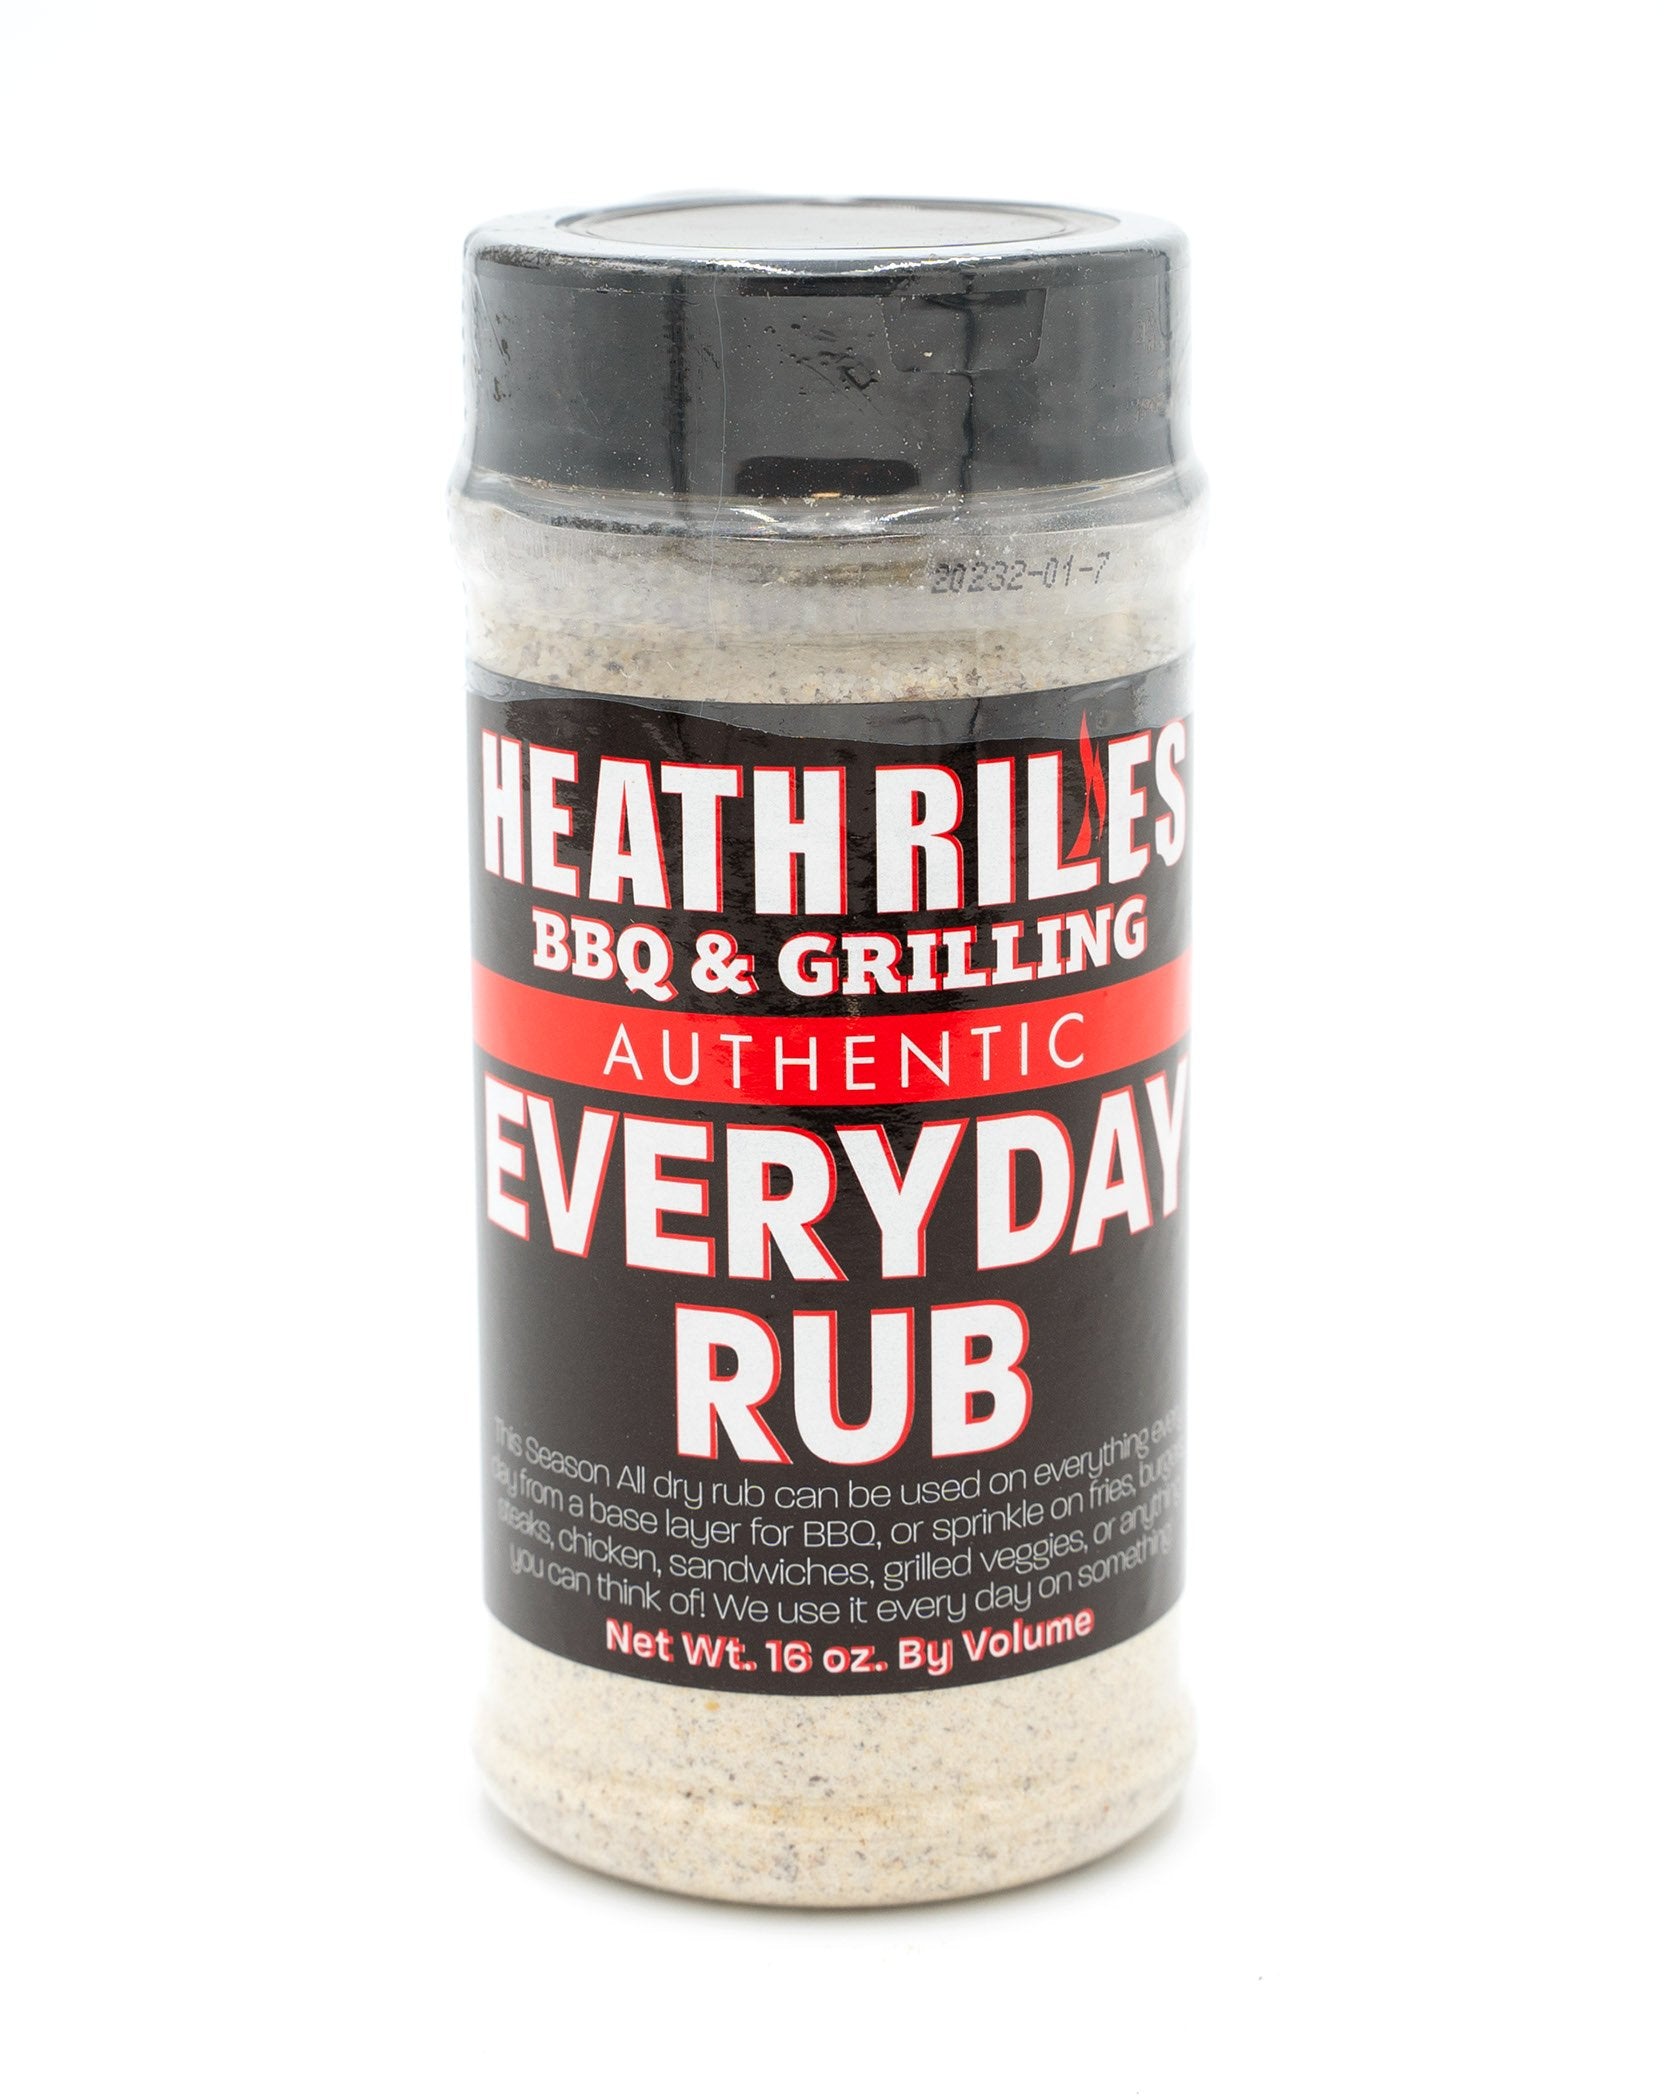 Buy Heath Riles Everyday Rub